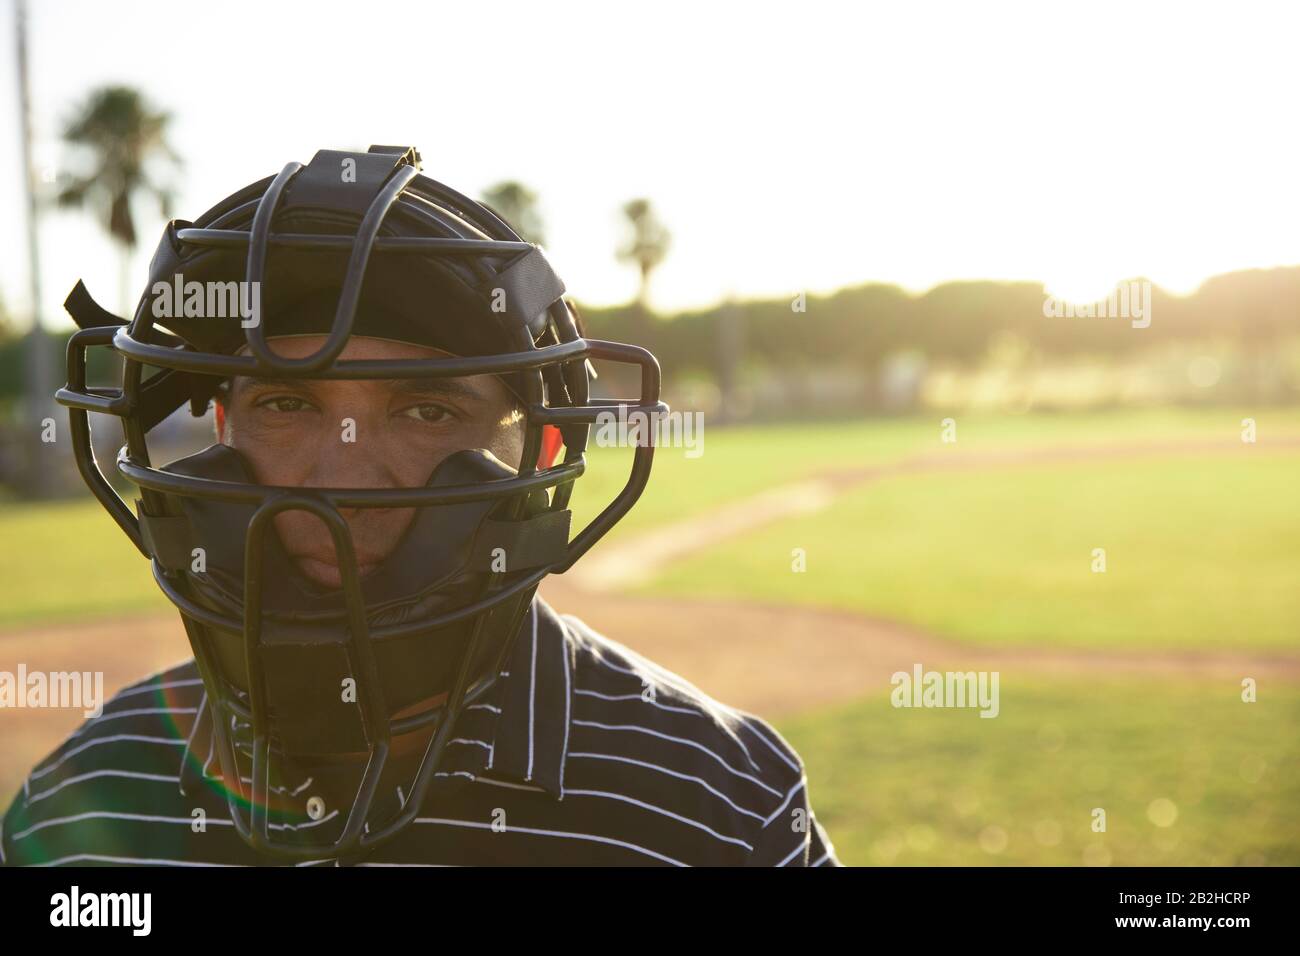 Joueur de baseball regardant l'appareil photo Banque D'Images